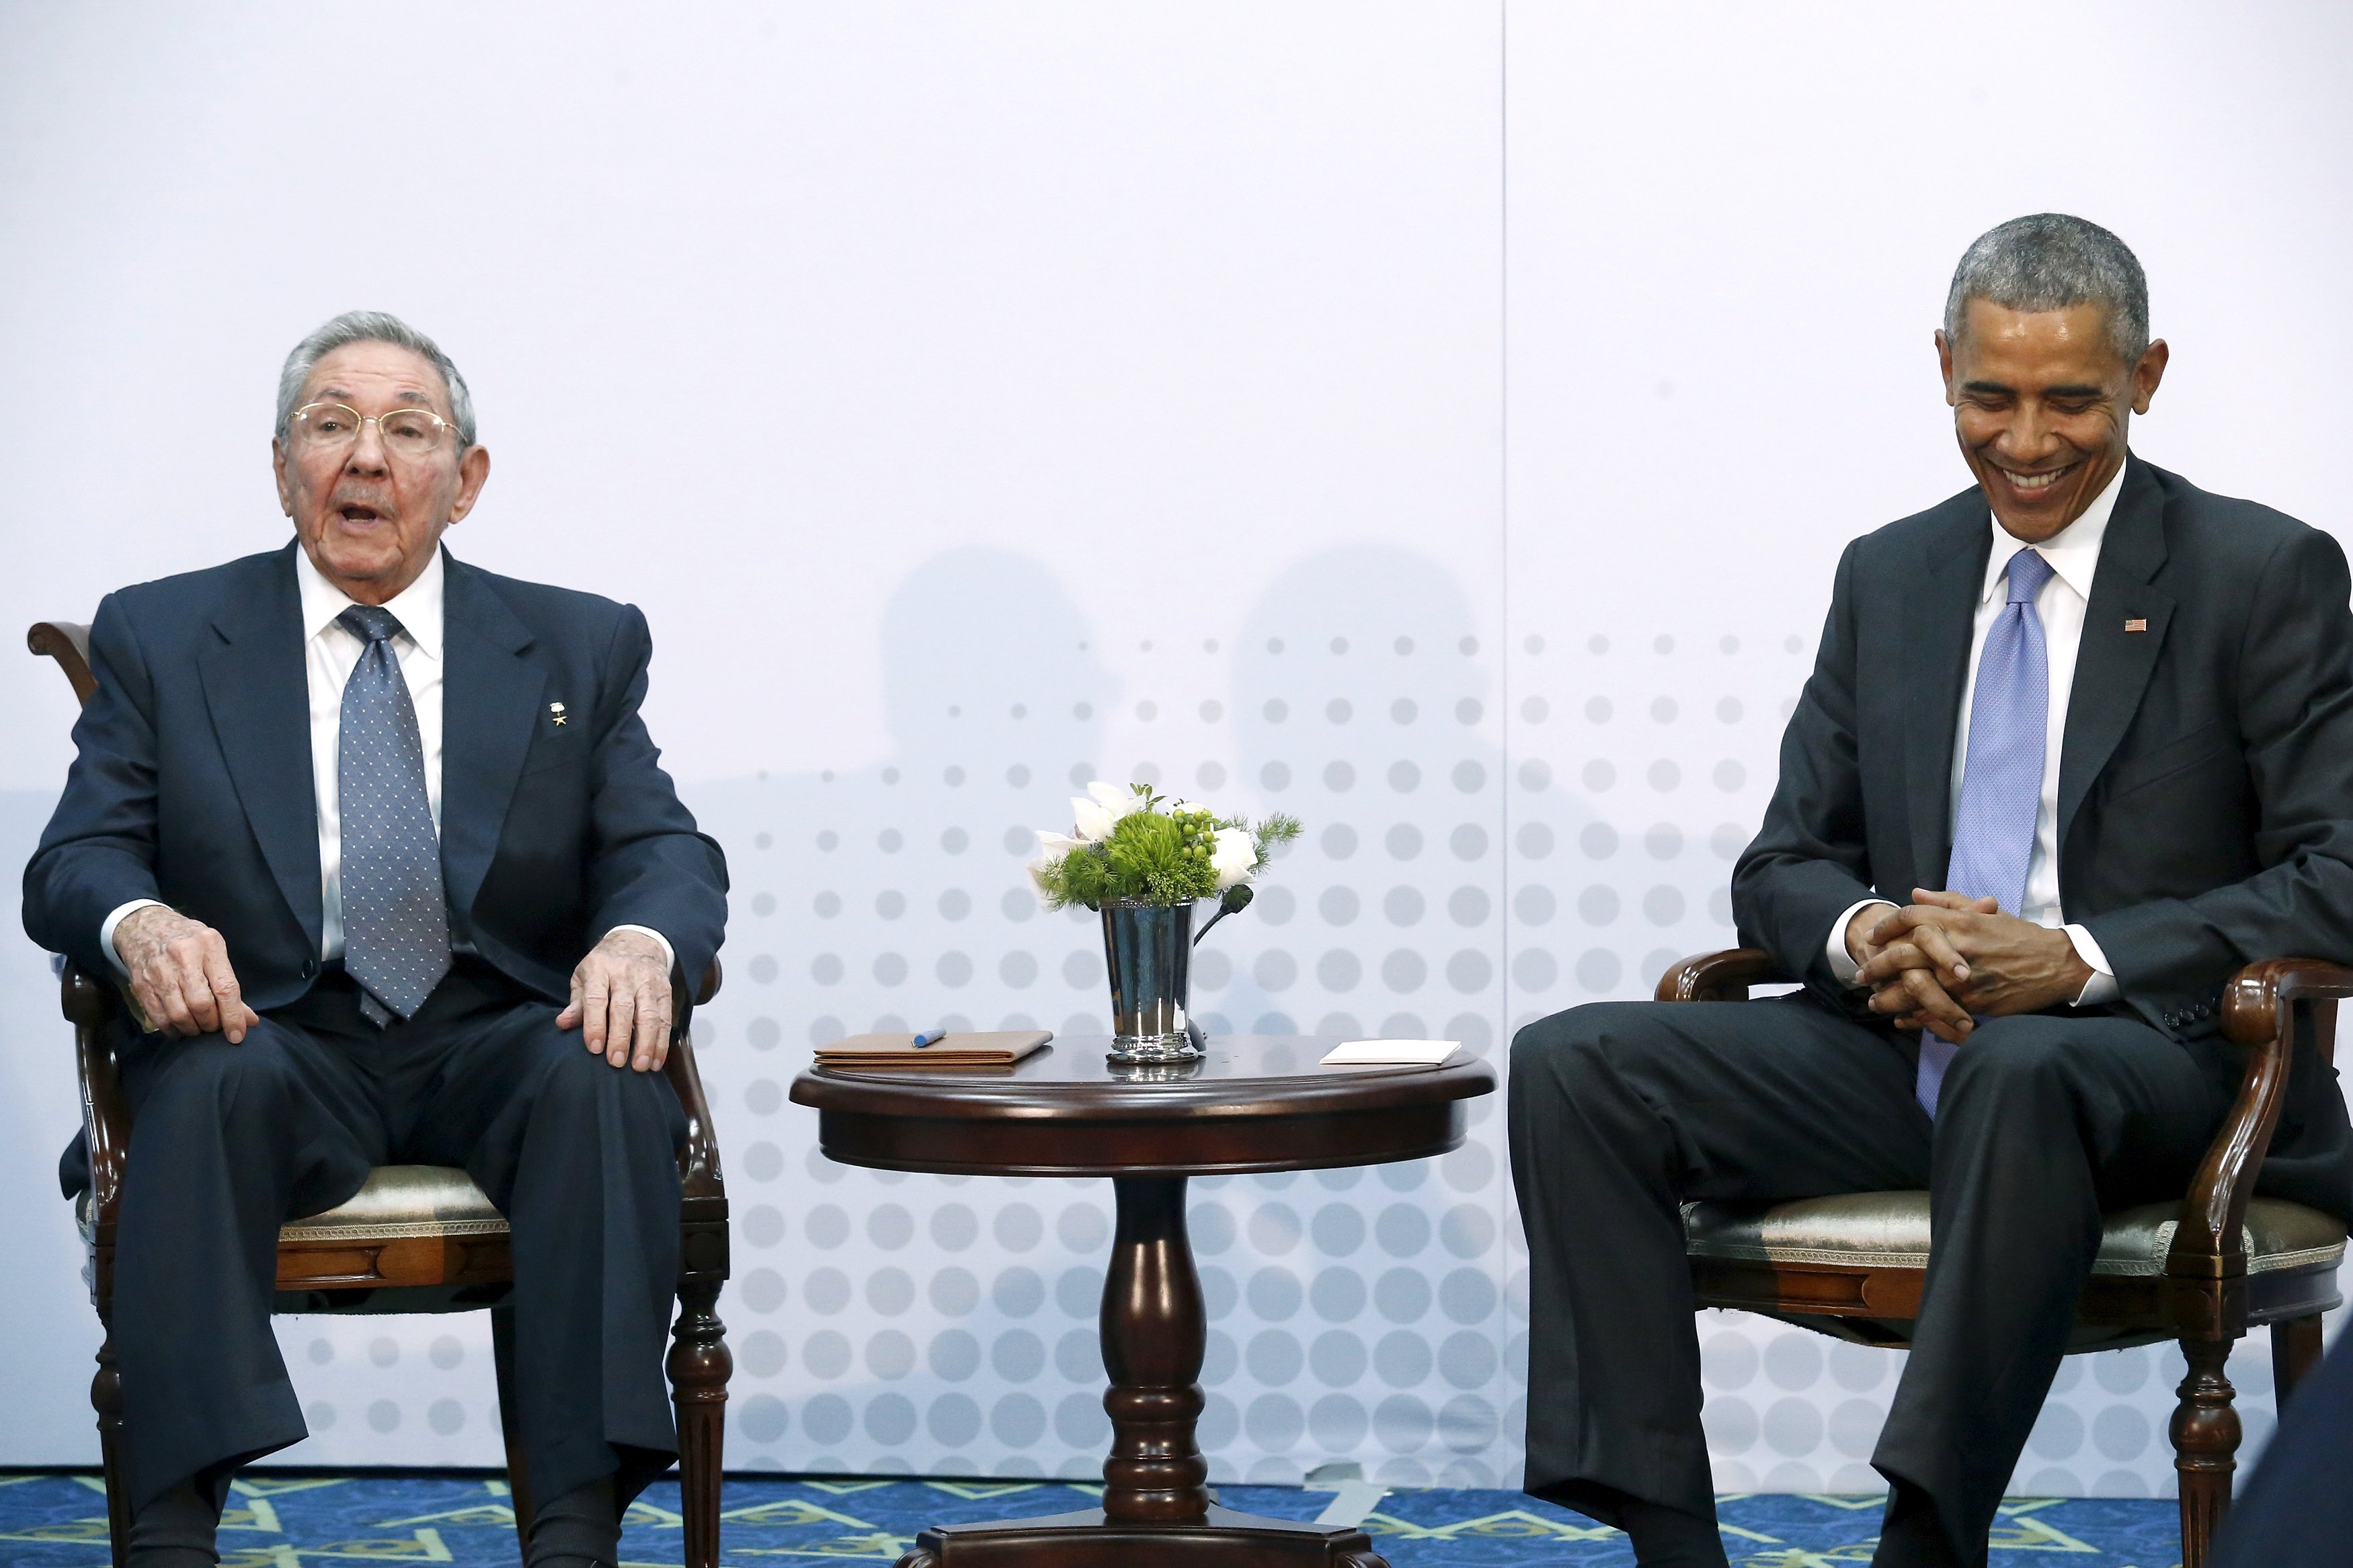 La reunión entre Obama y Castro duró una hora